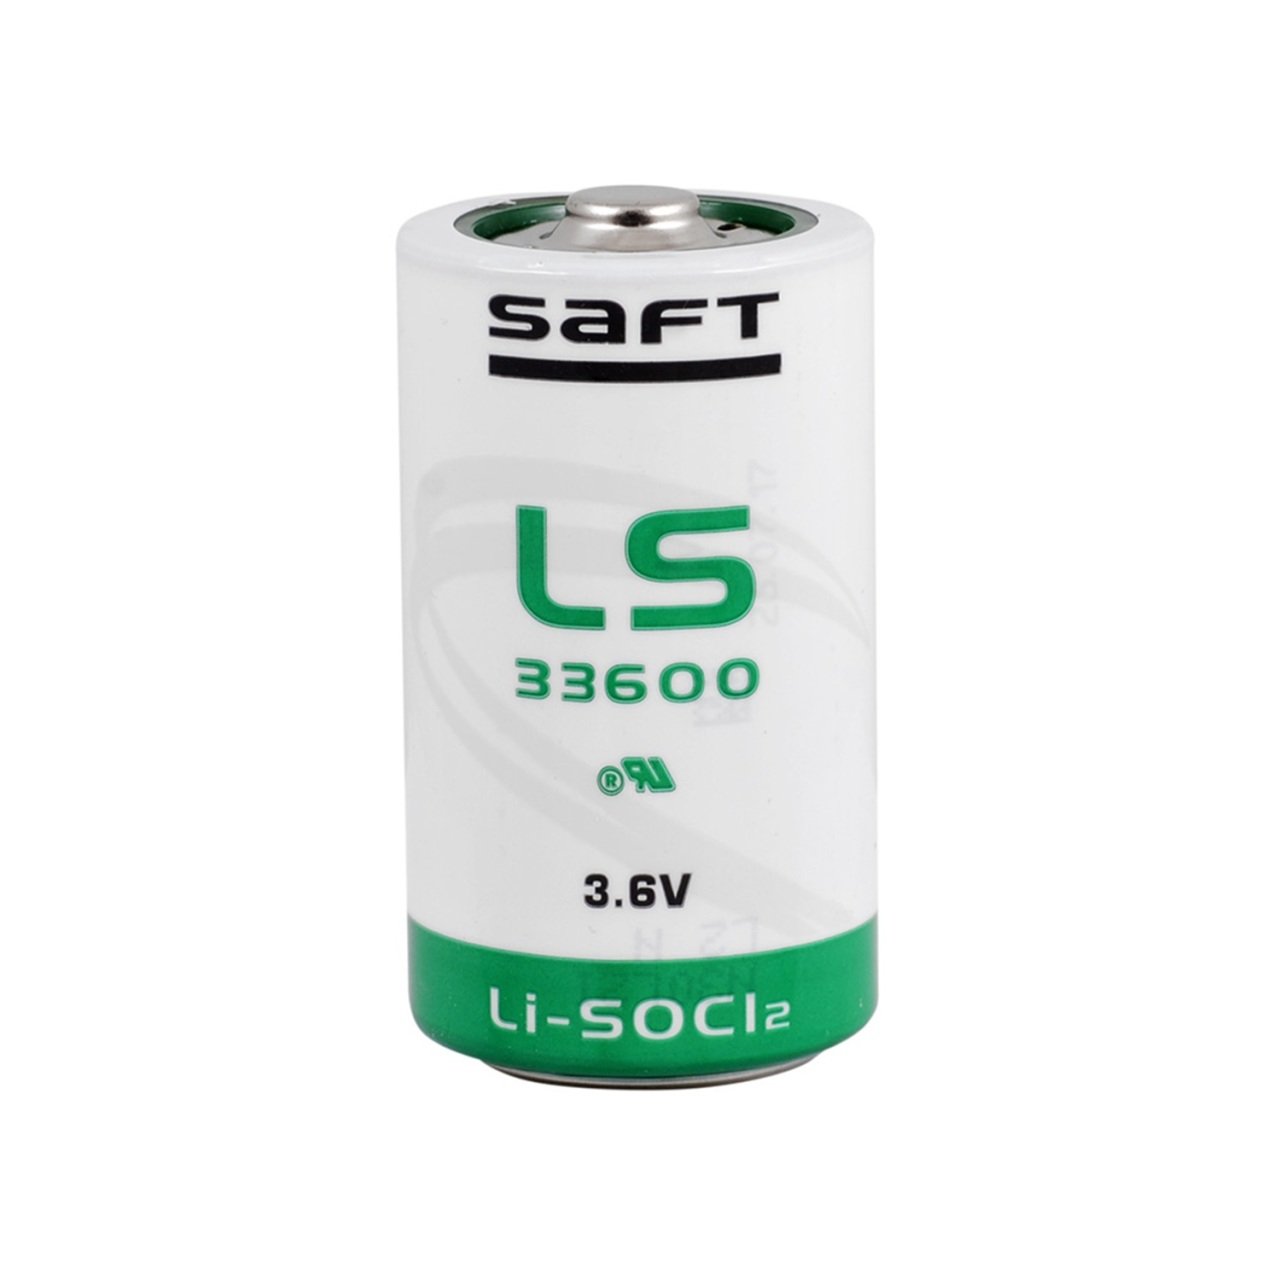 Saft LS 33600 3.6V Lityum Pil Büyük Boy